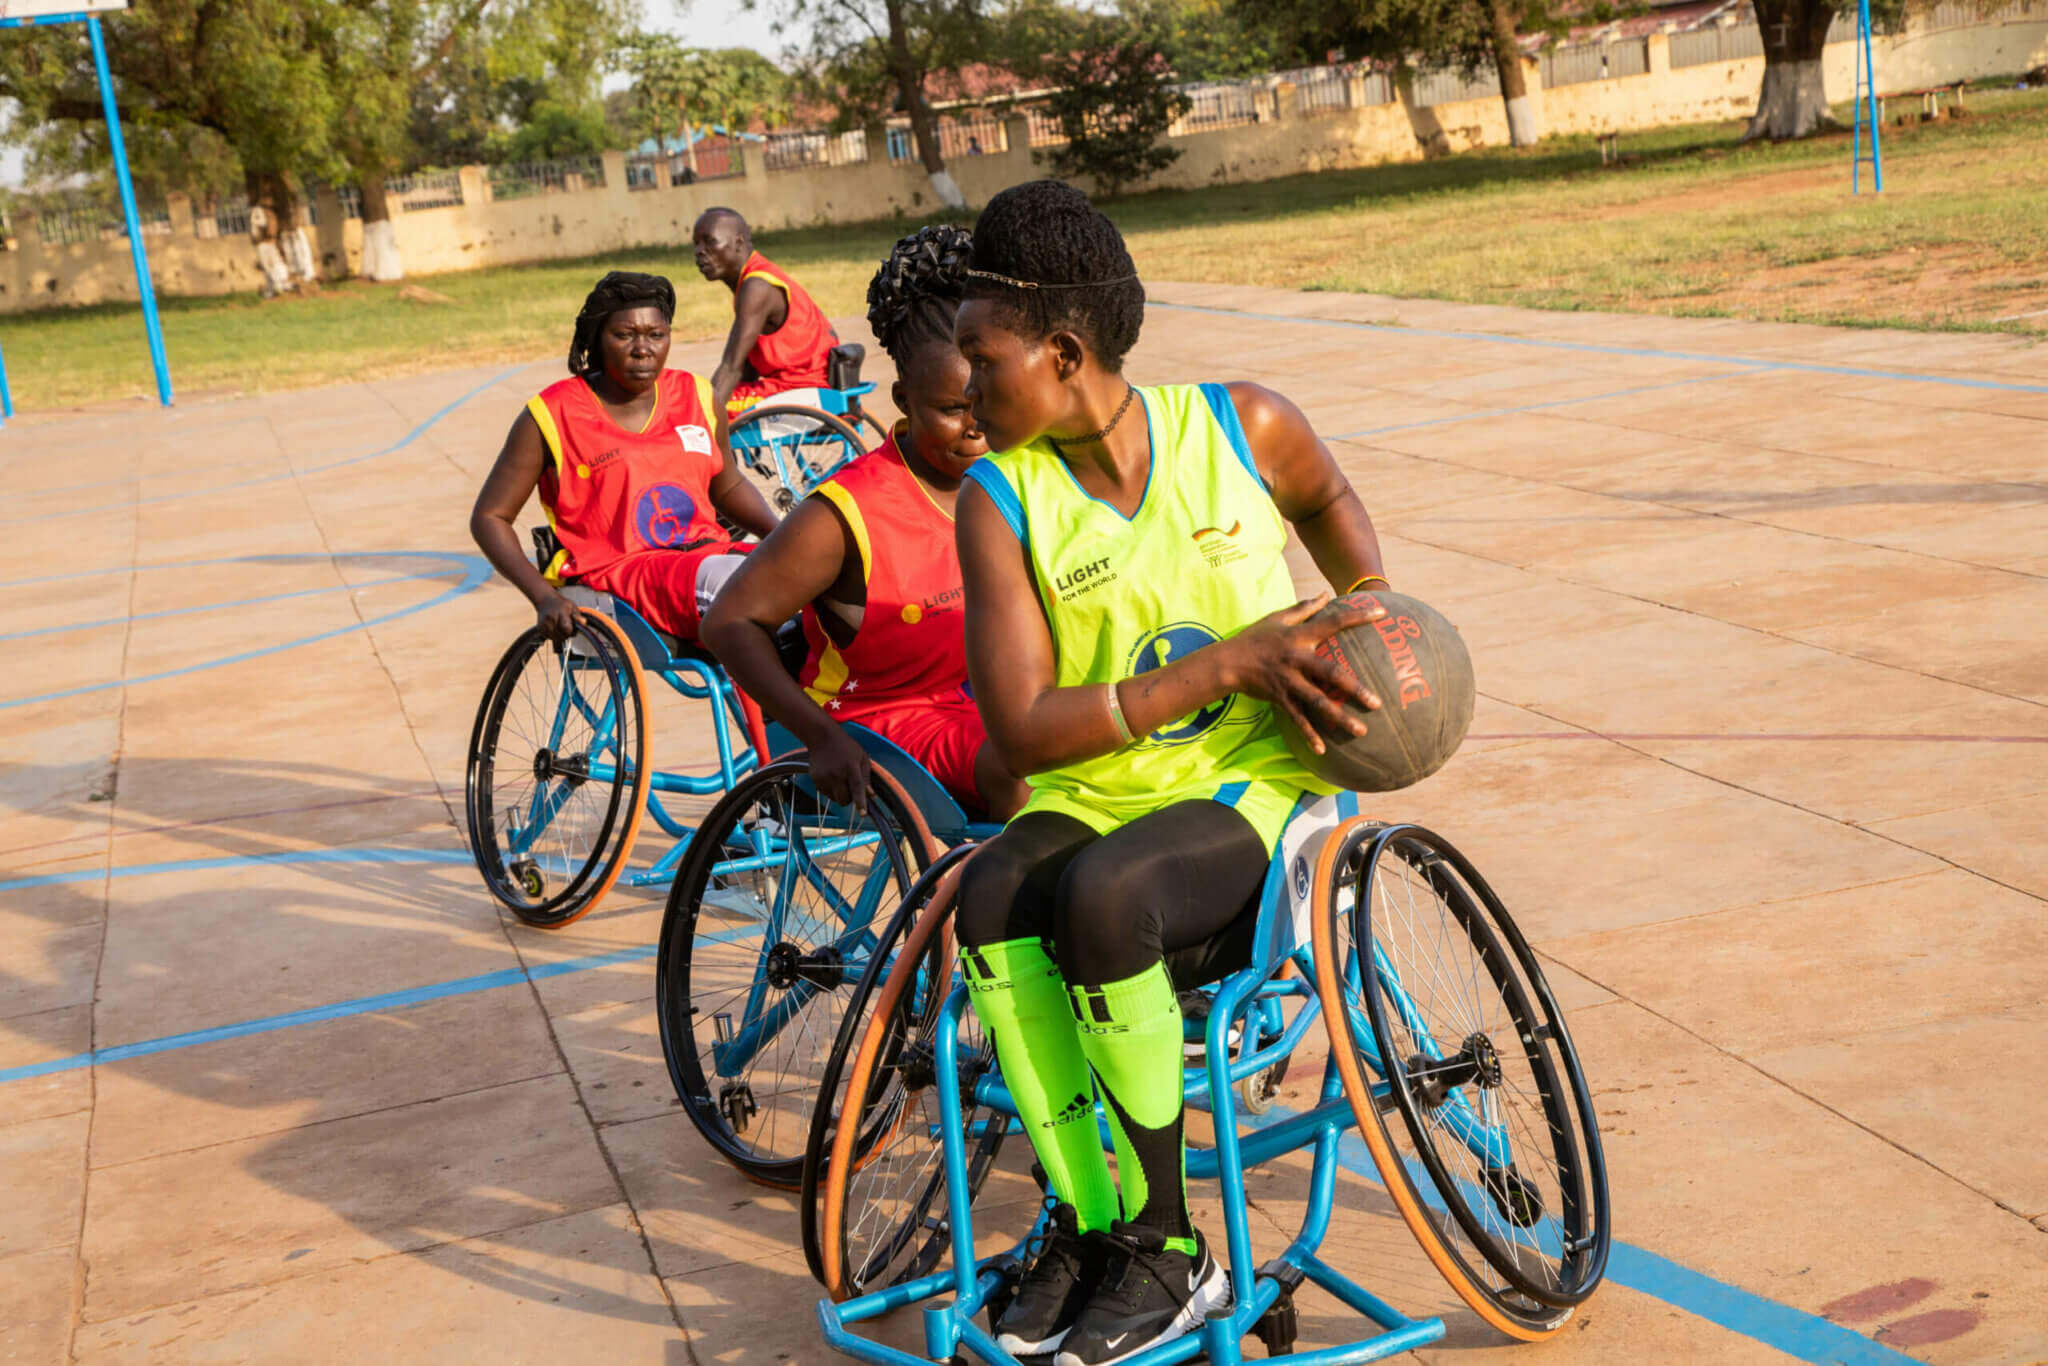 Vier Frauen im Rollstuhl spielen Basketball auf einem großen Feld. Eine Frau in einem gelben Hemd dribbelt den Ball.